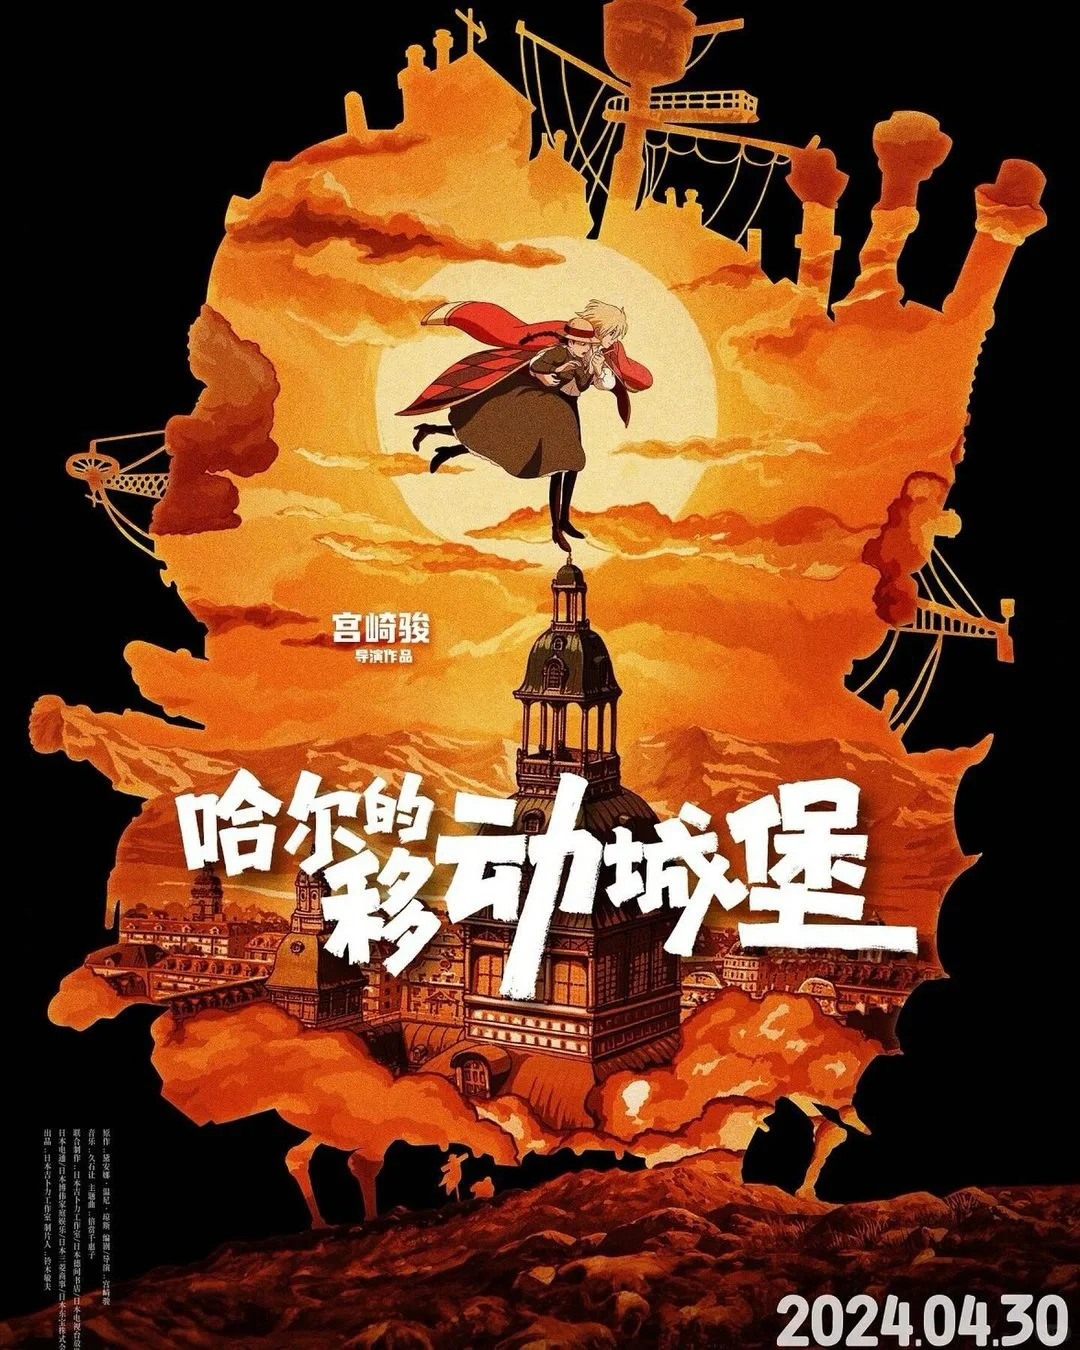 一组宫崎骏动画 国内电影海报欣赏